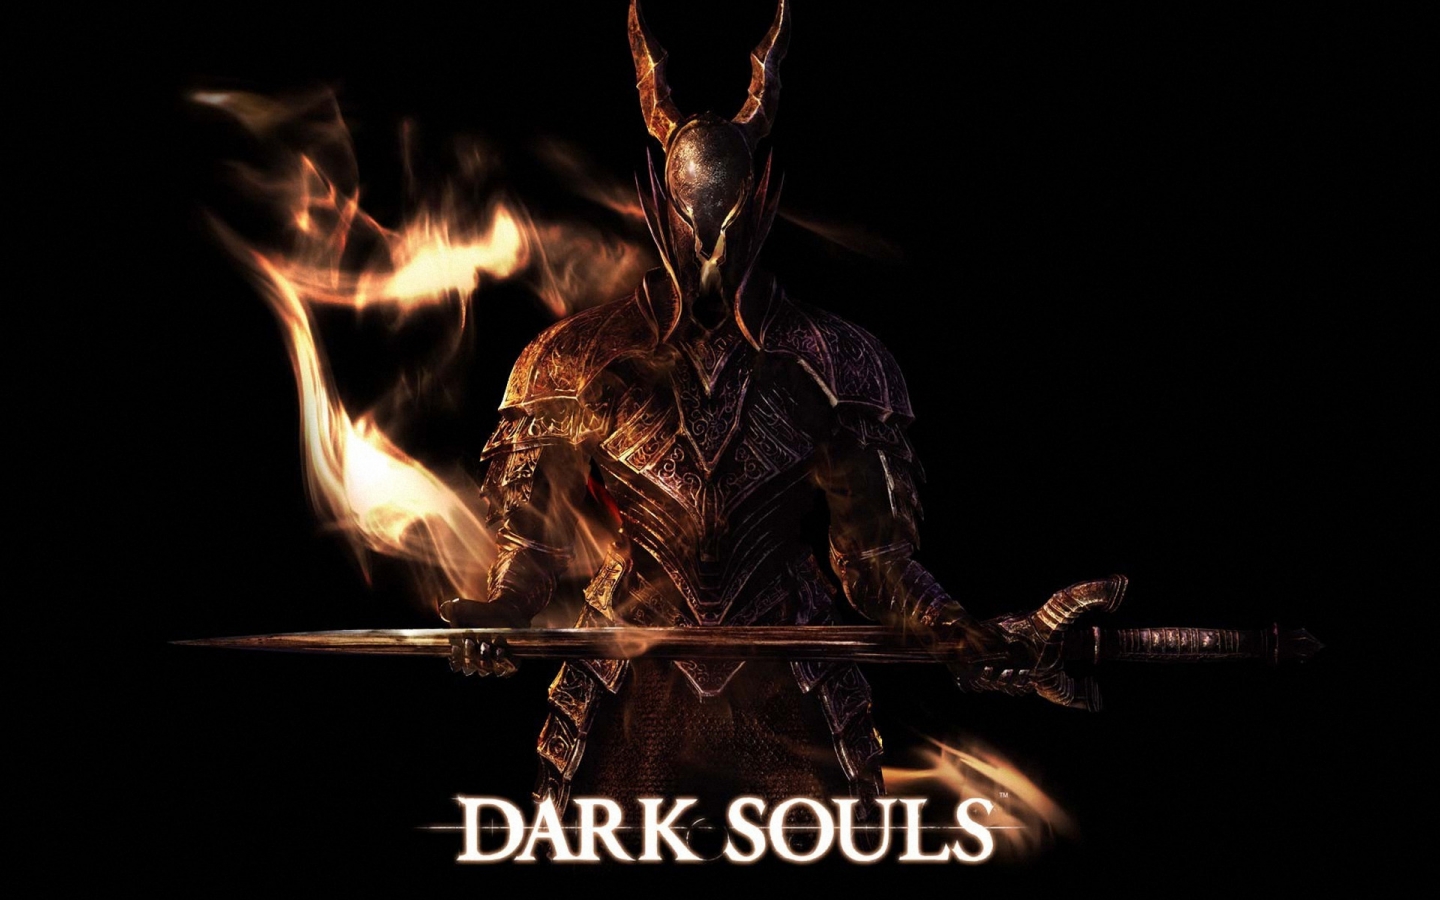 Dark Souls Art for 1440 x 900 widescreen resolution